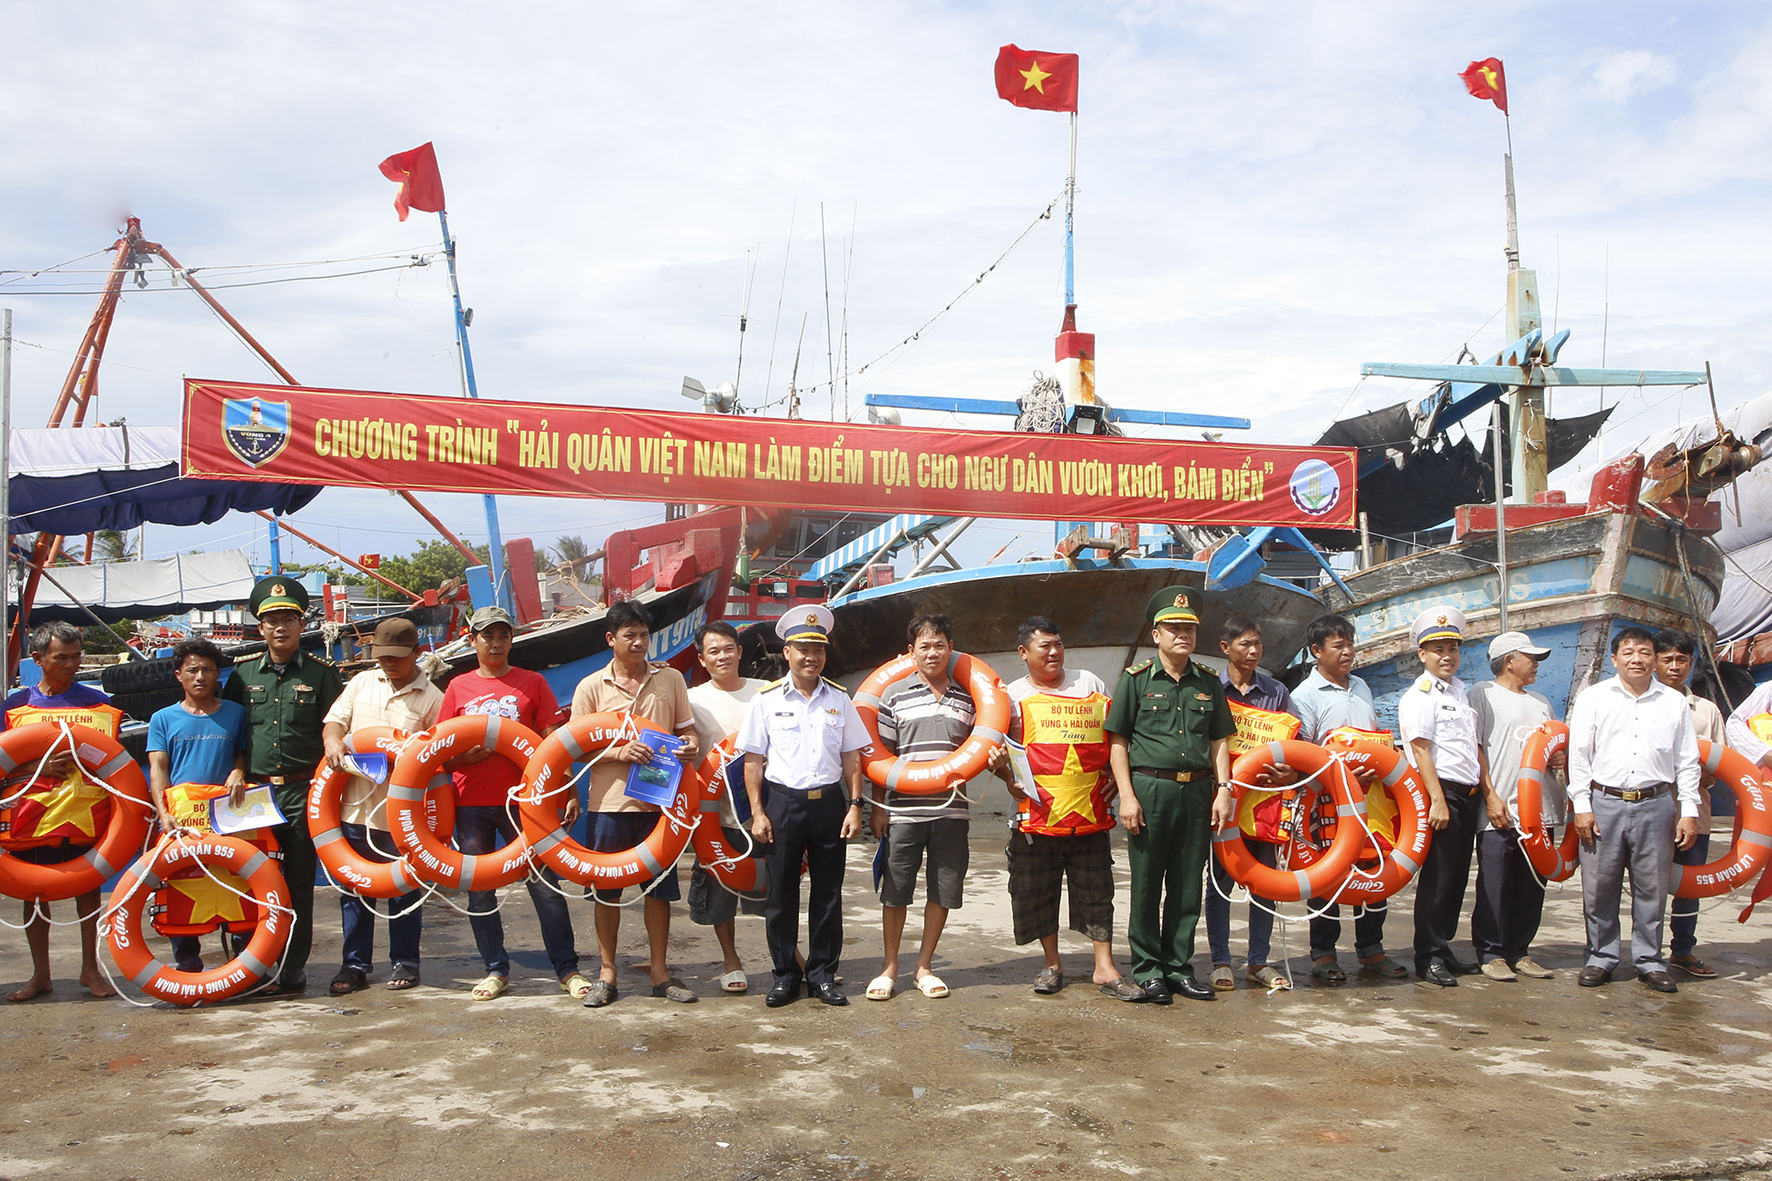  Tặng quà và khám bệnh, cấp thuốc miễn phí cho ngư dân tỉnh Ninh Thuận - Ảnh 1.